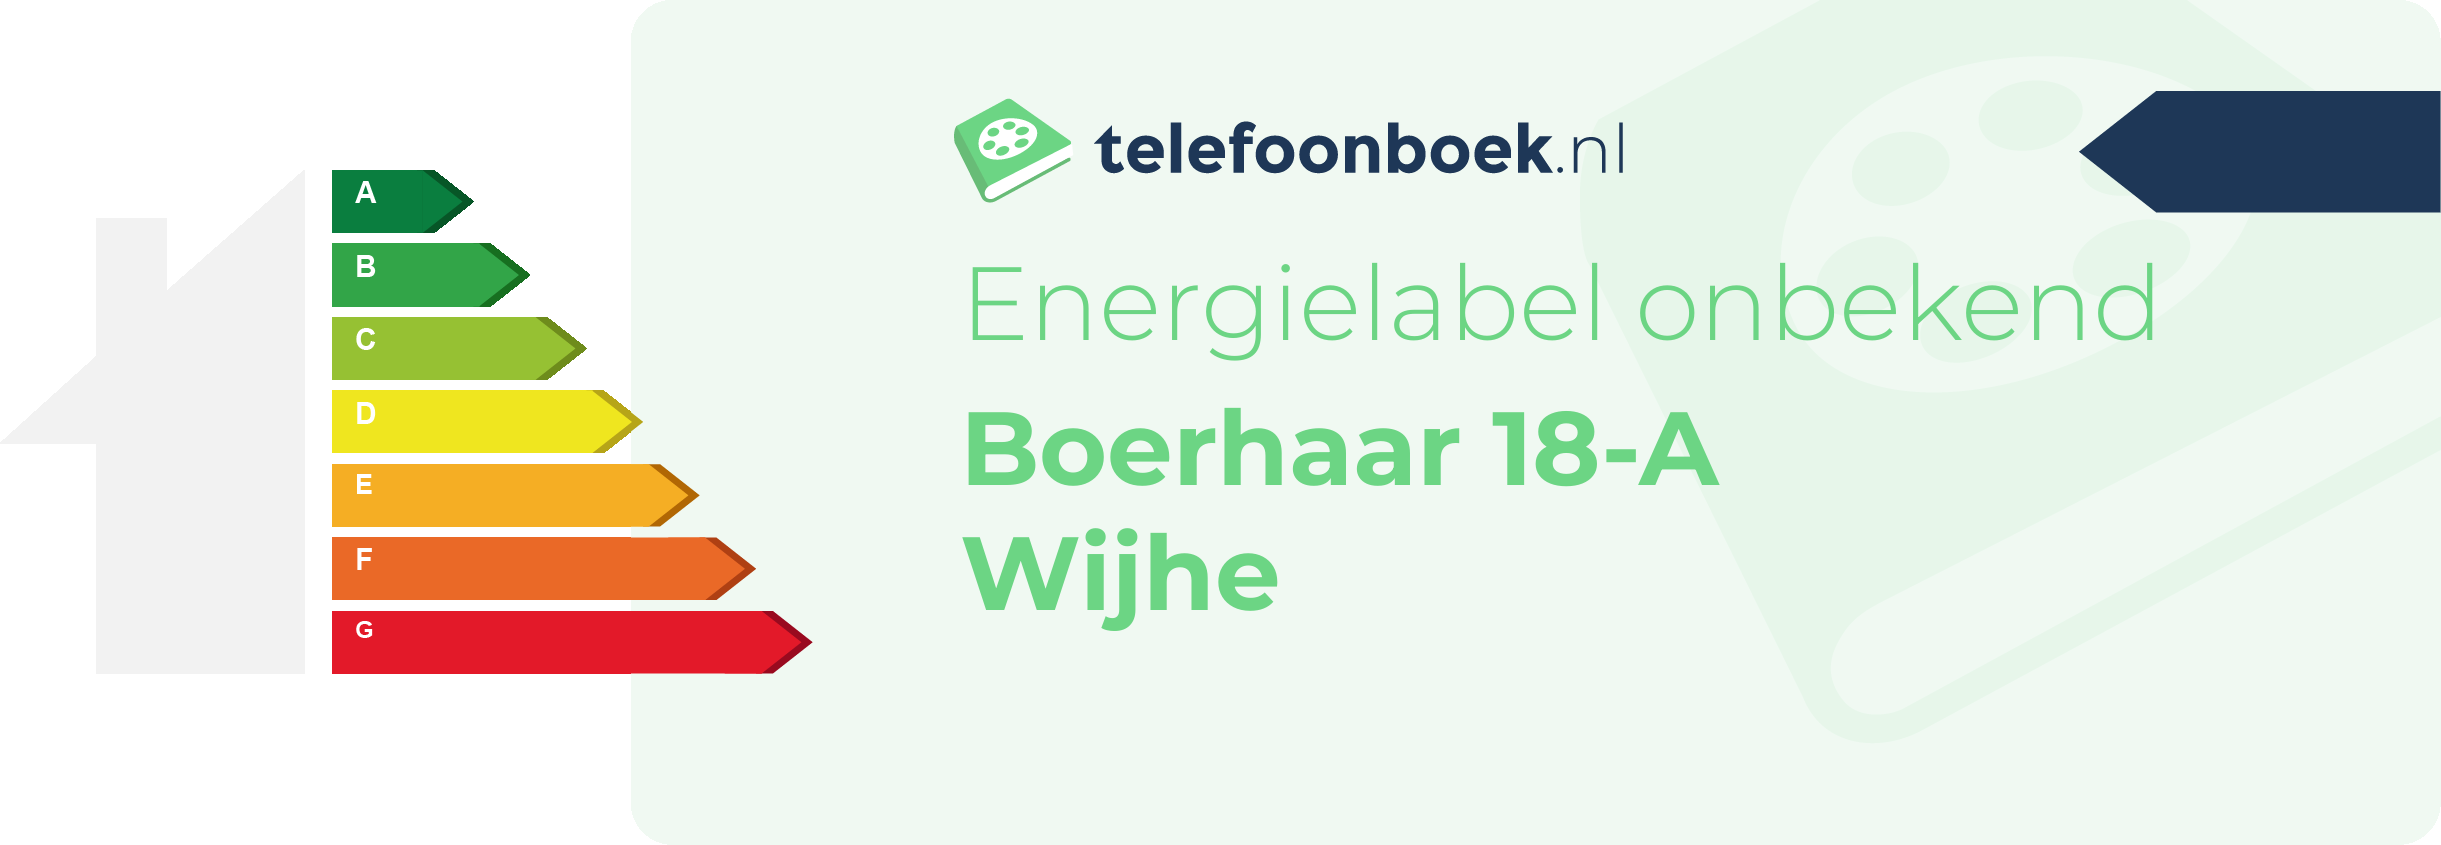 Energielabel Boerhaar 18-A Wijhe